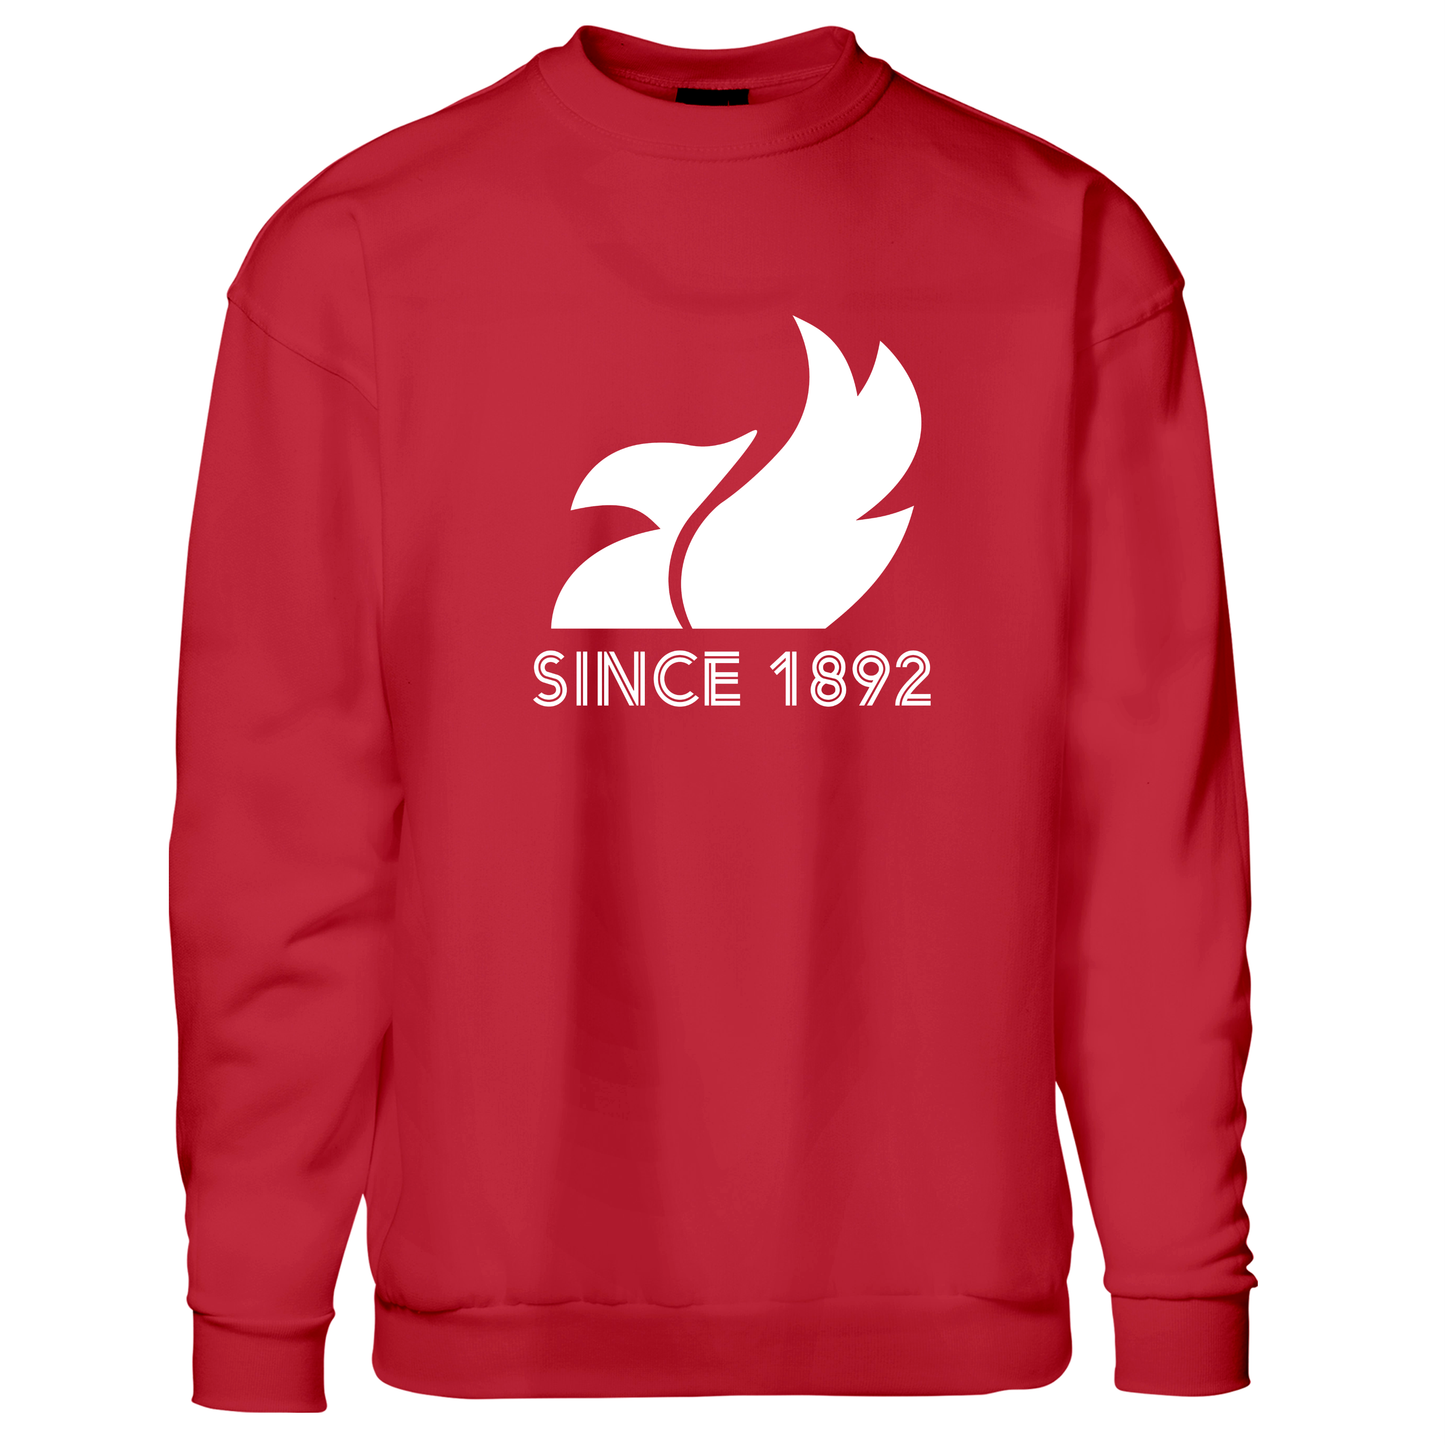 Since 1892 - Sweatshirt